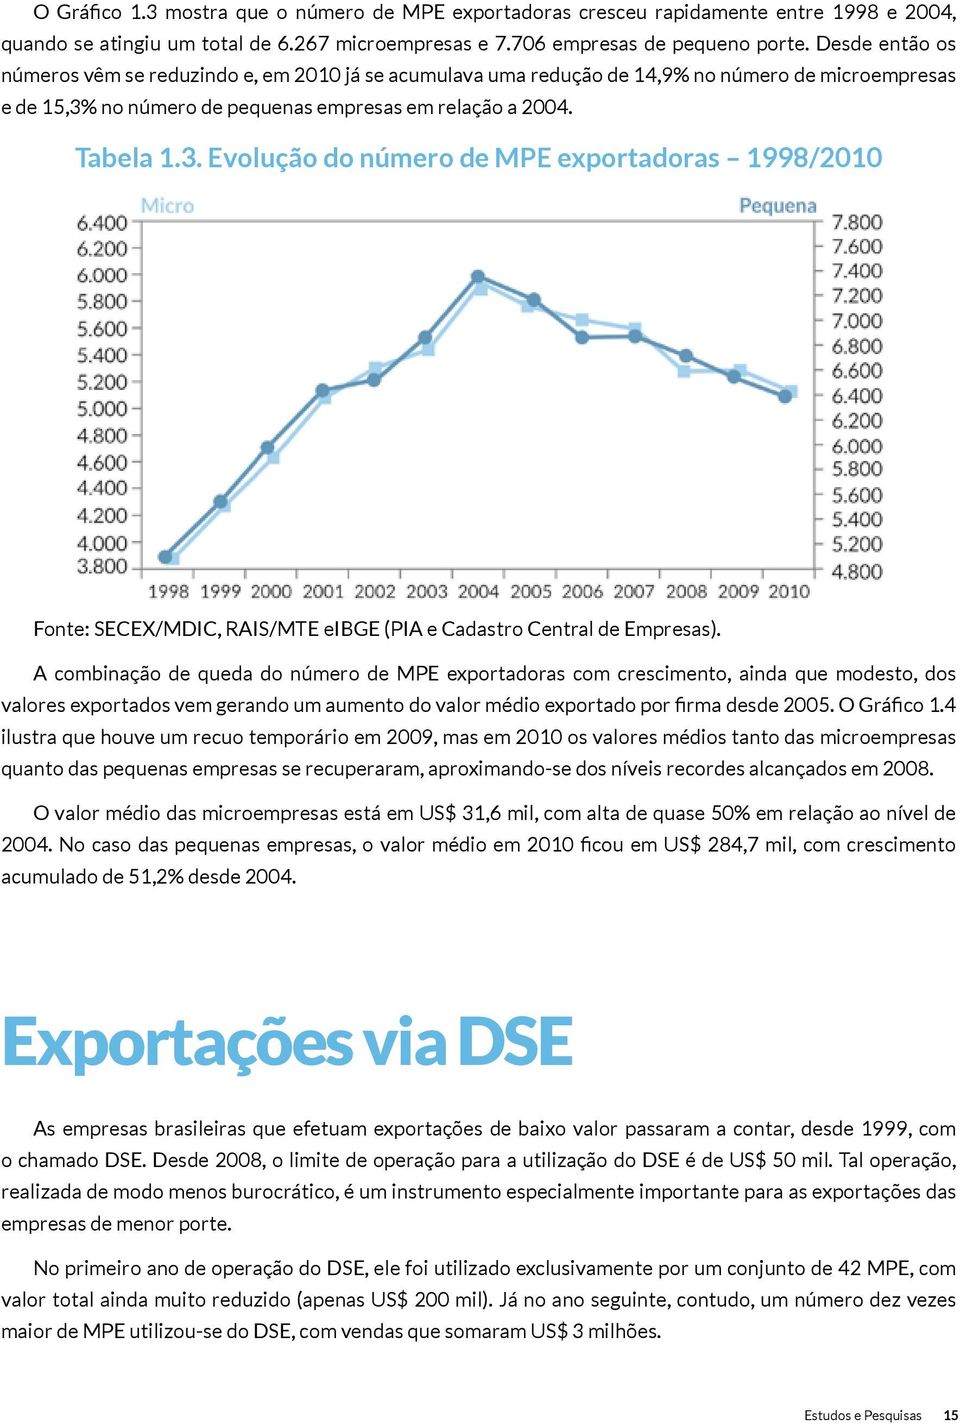 no número de pequenas empresas em relação a 2004. Tabela 1.3. Evolução do número de MPE exportadoras 1998/2010 Fonte: SECEX/MDIC, RAIS/MTE eibge (PIA e Cadastro Central de Empresas).